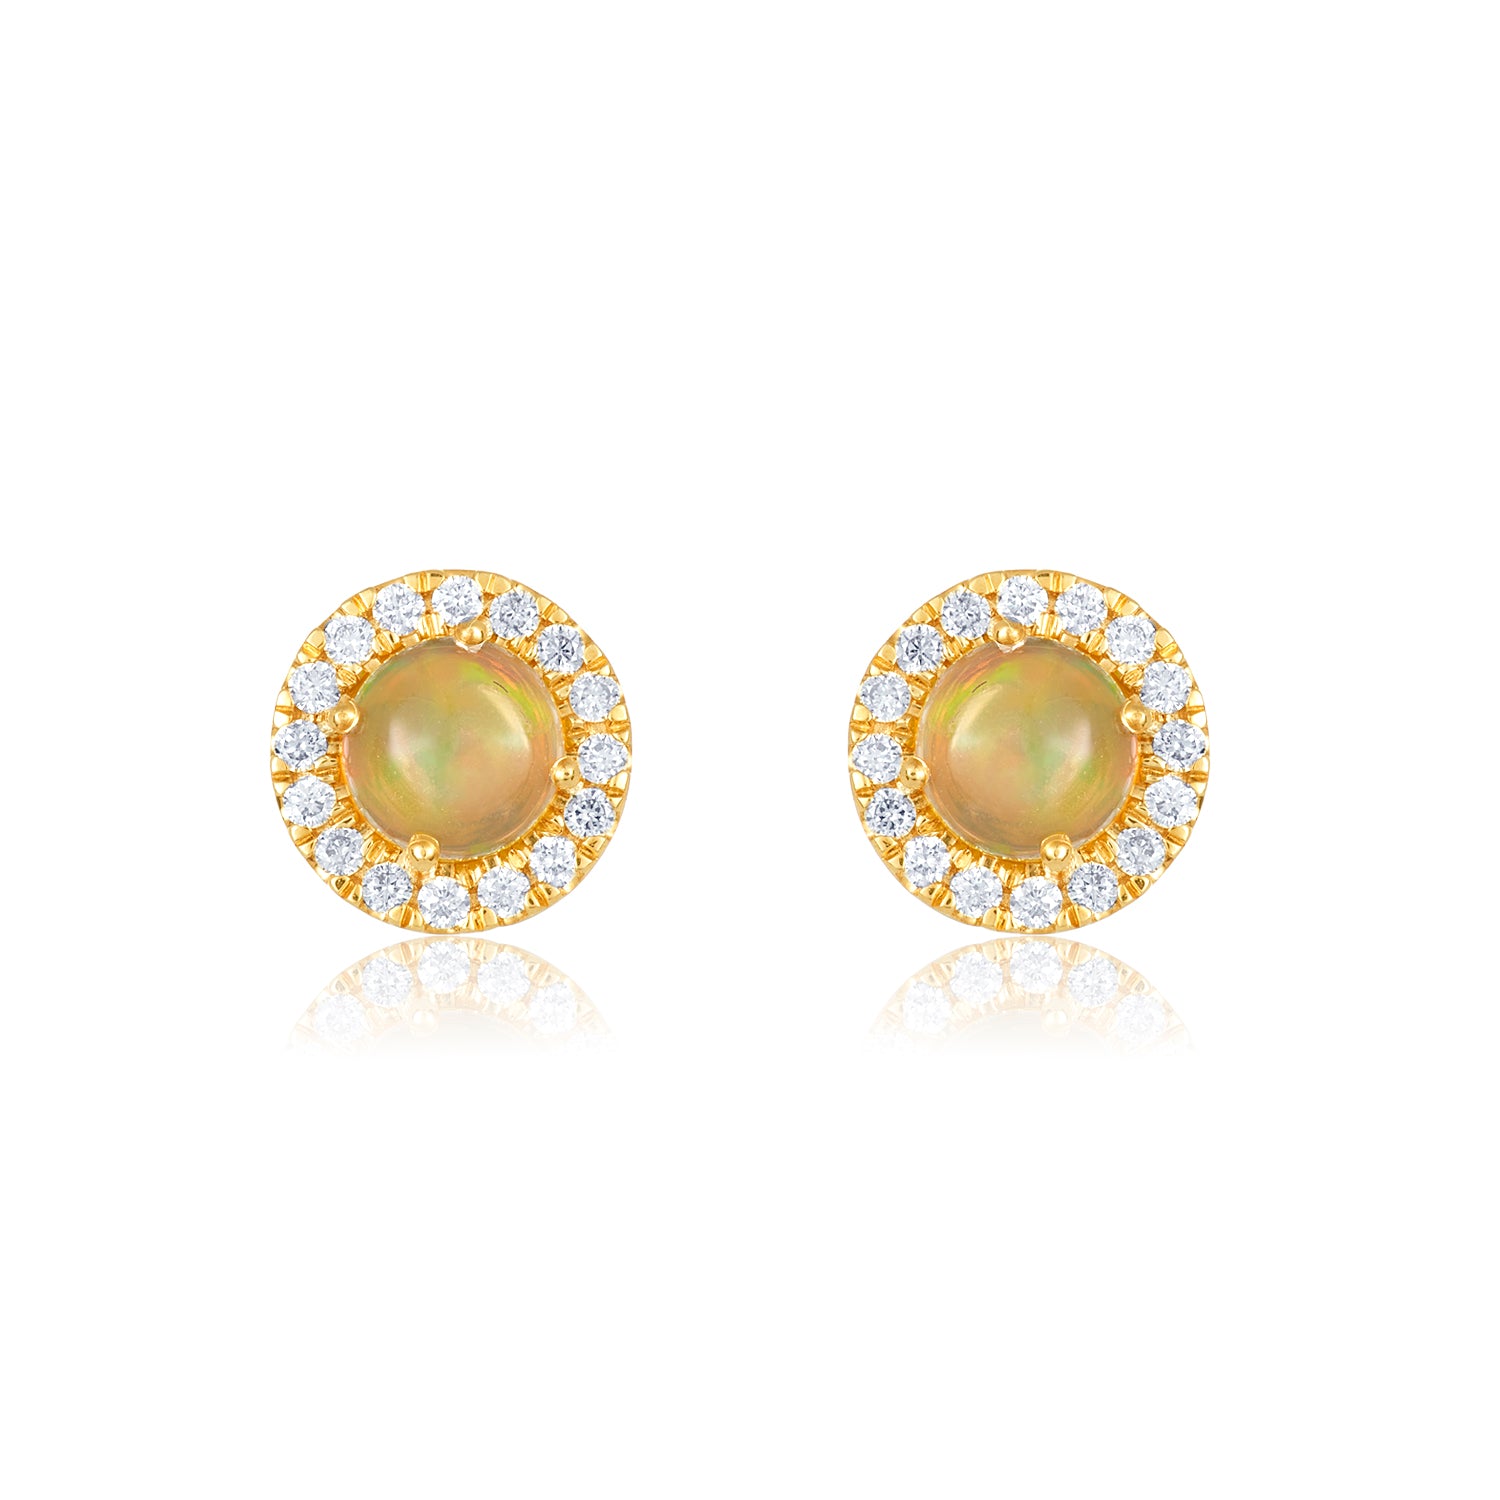 Fire Opal Diamond Earrings in 14k